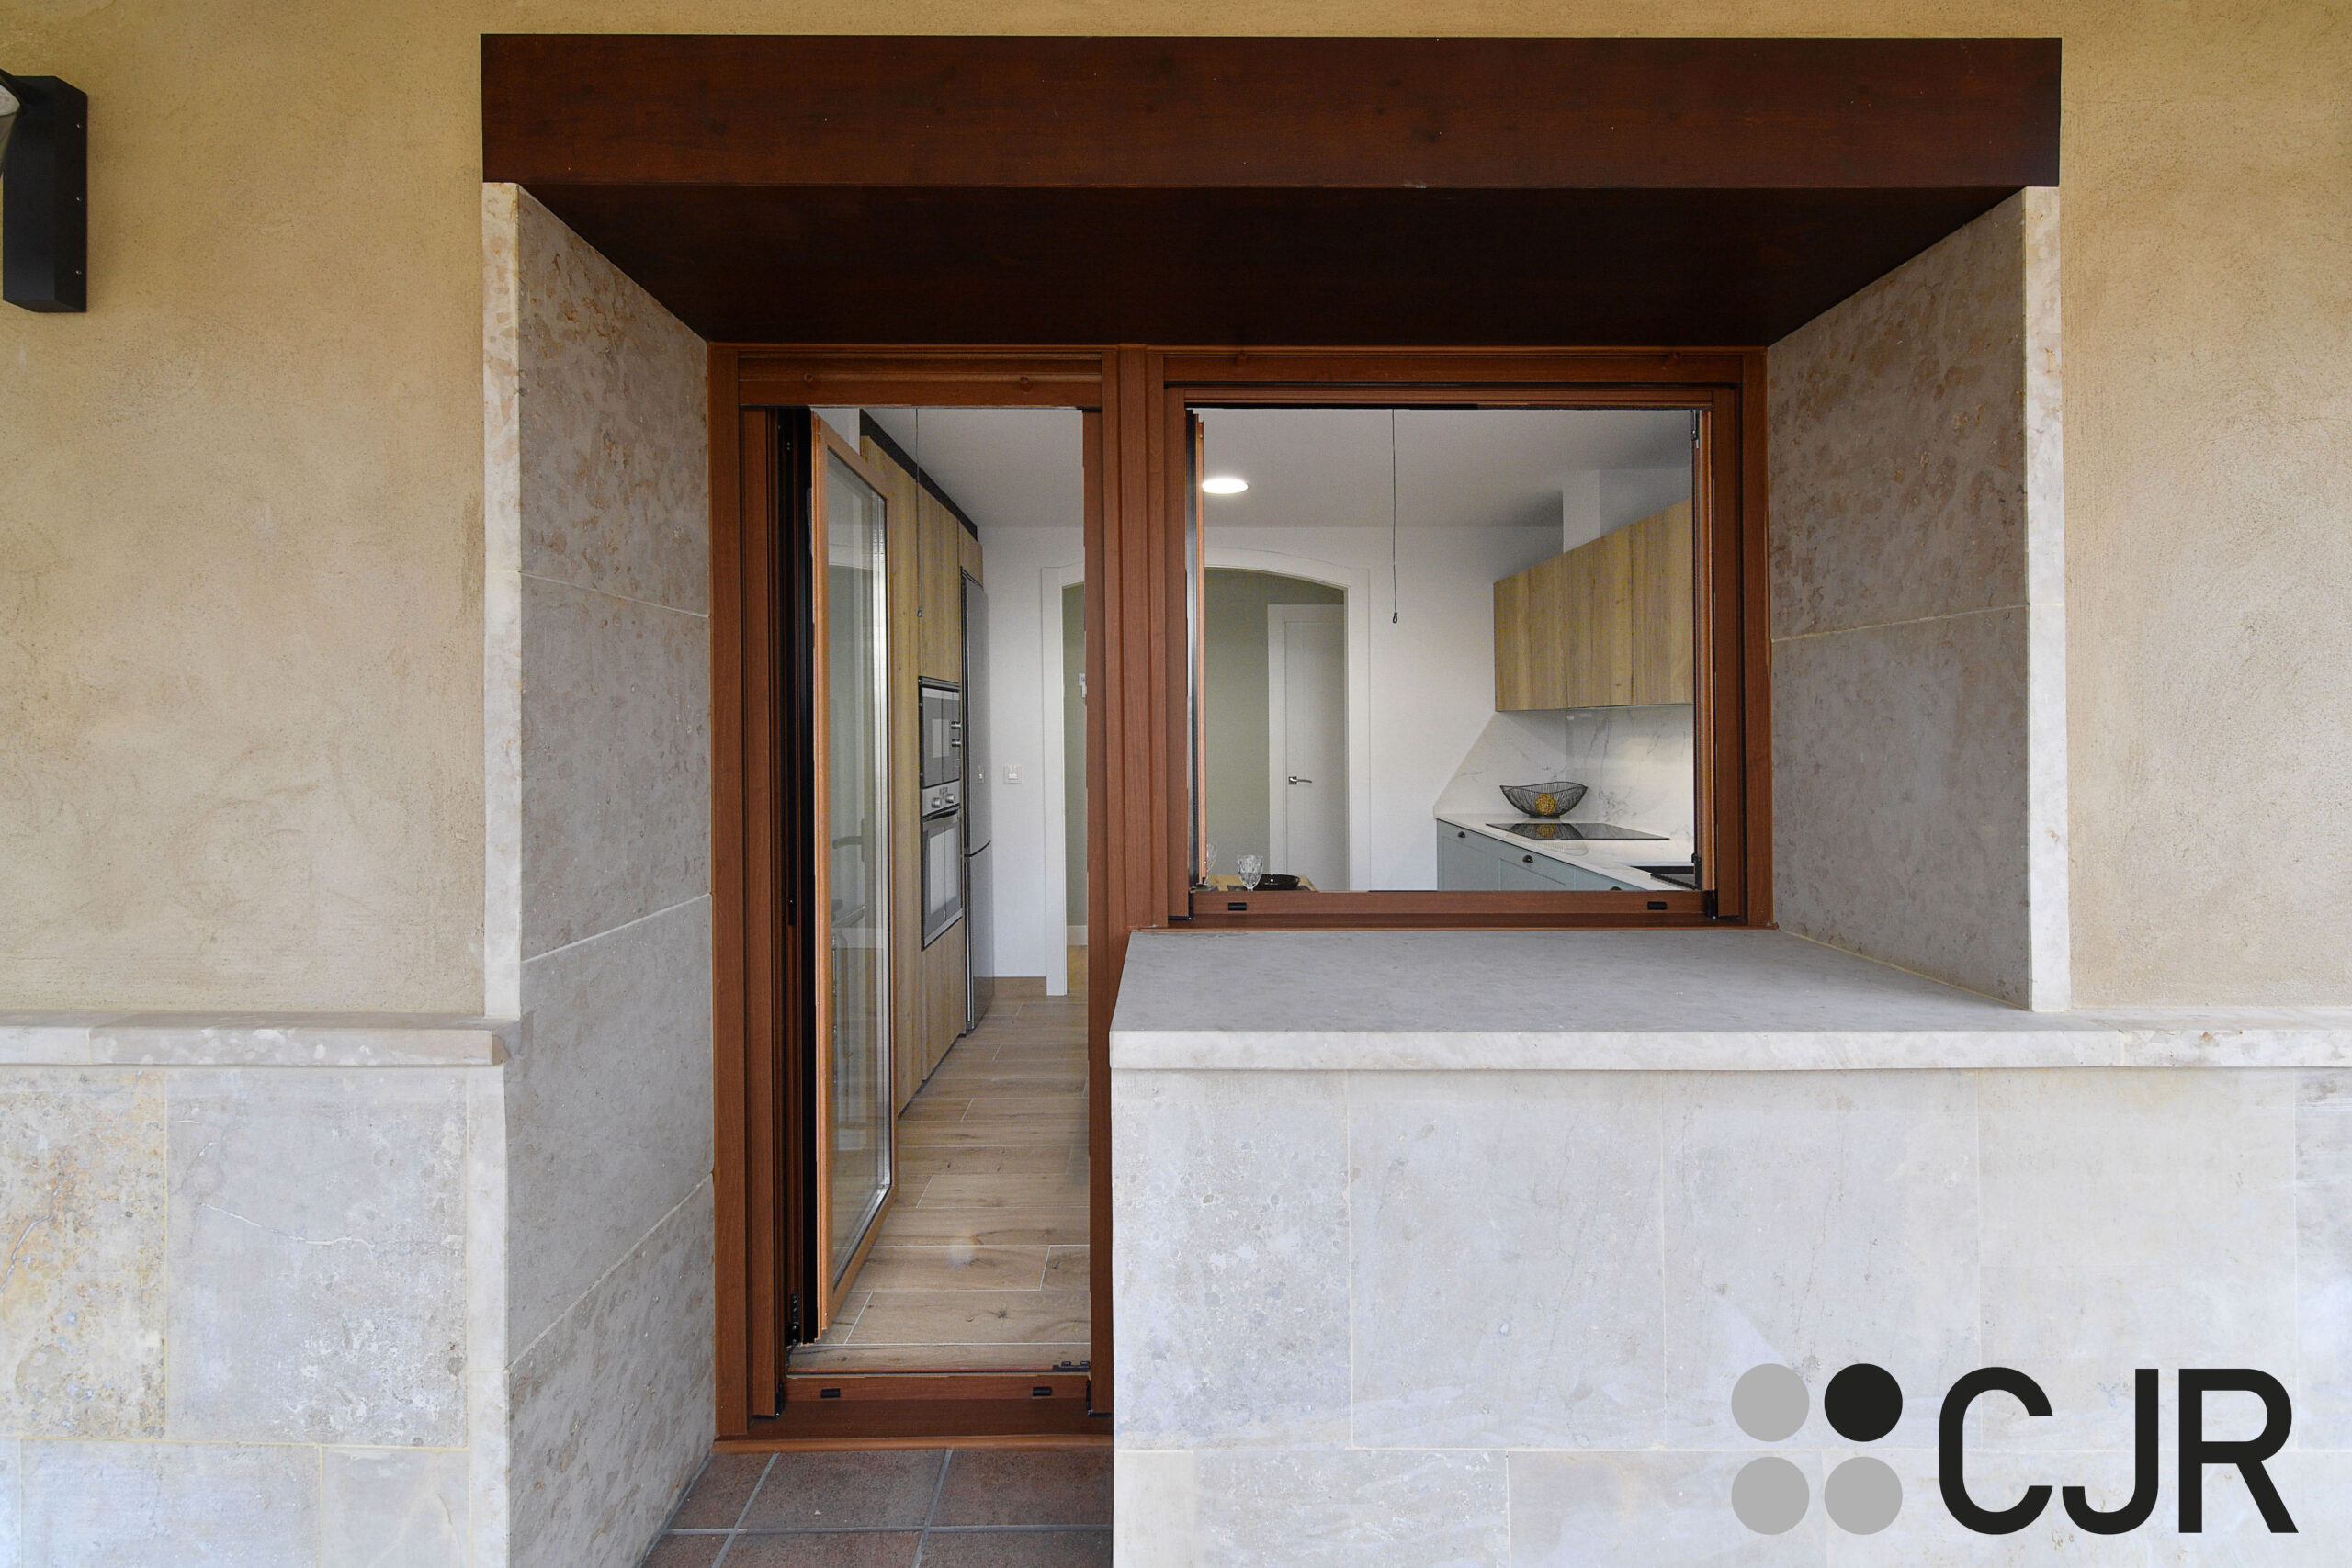 puerta y ventana de cocina en madera cjr